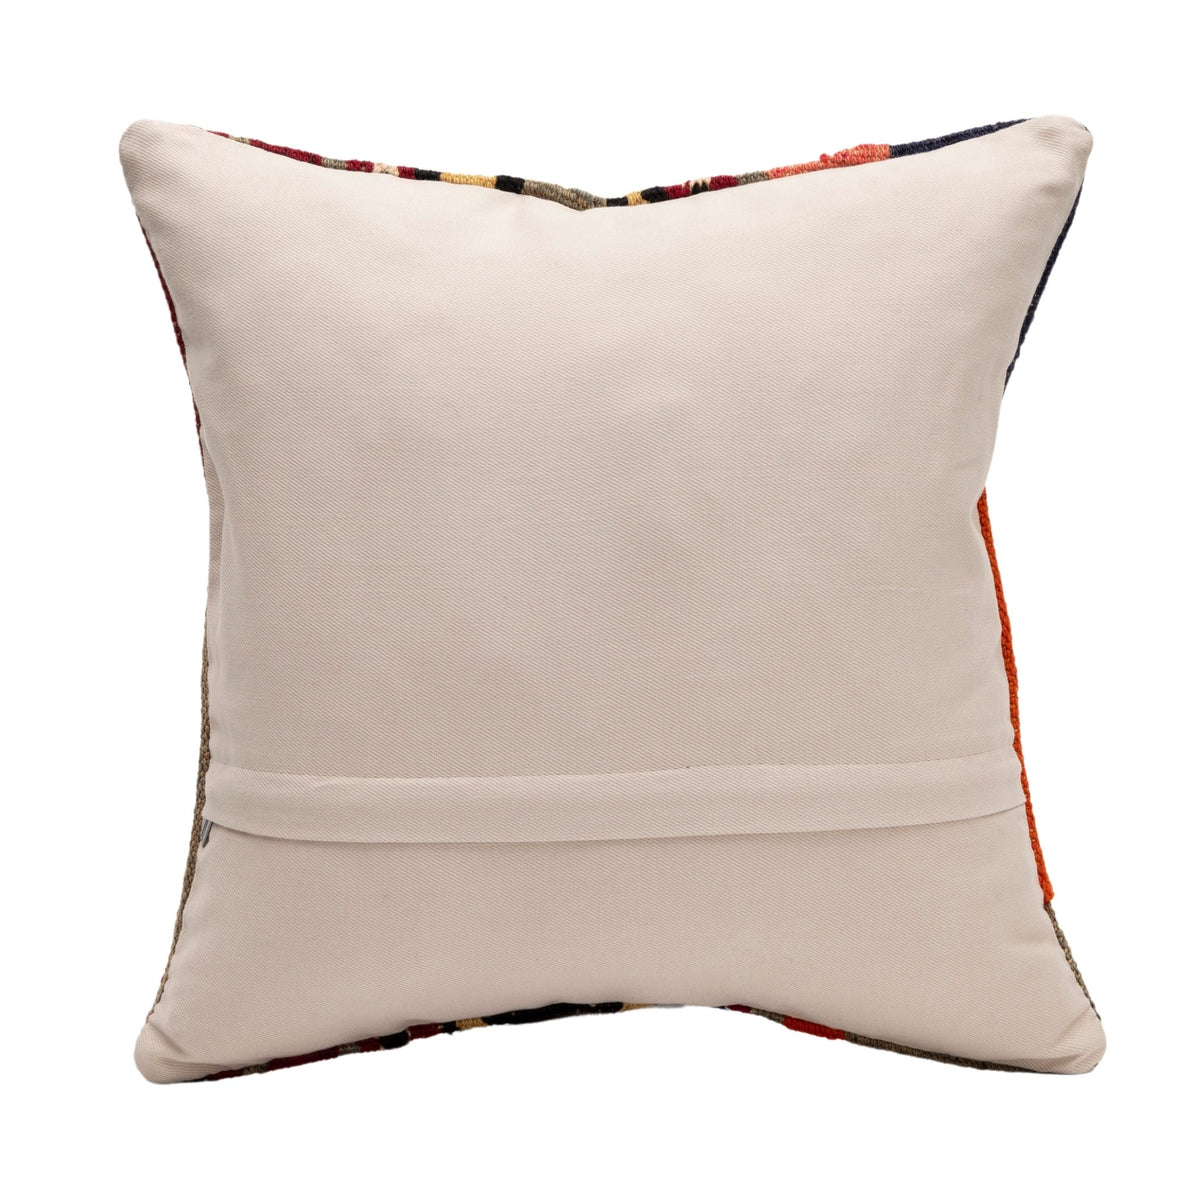 Handmade Neutral Kilim Throw Pillow Case 16" x 16"